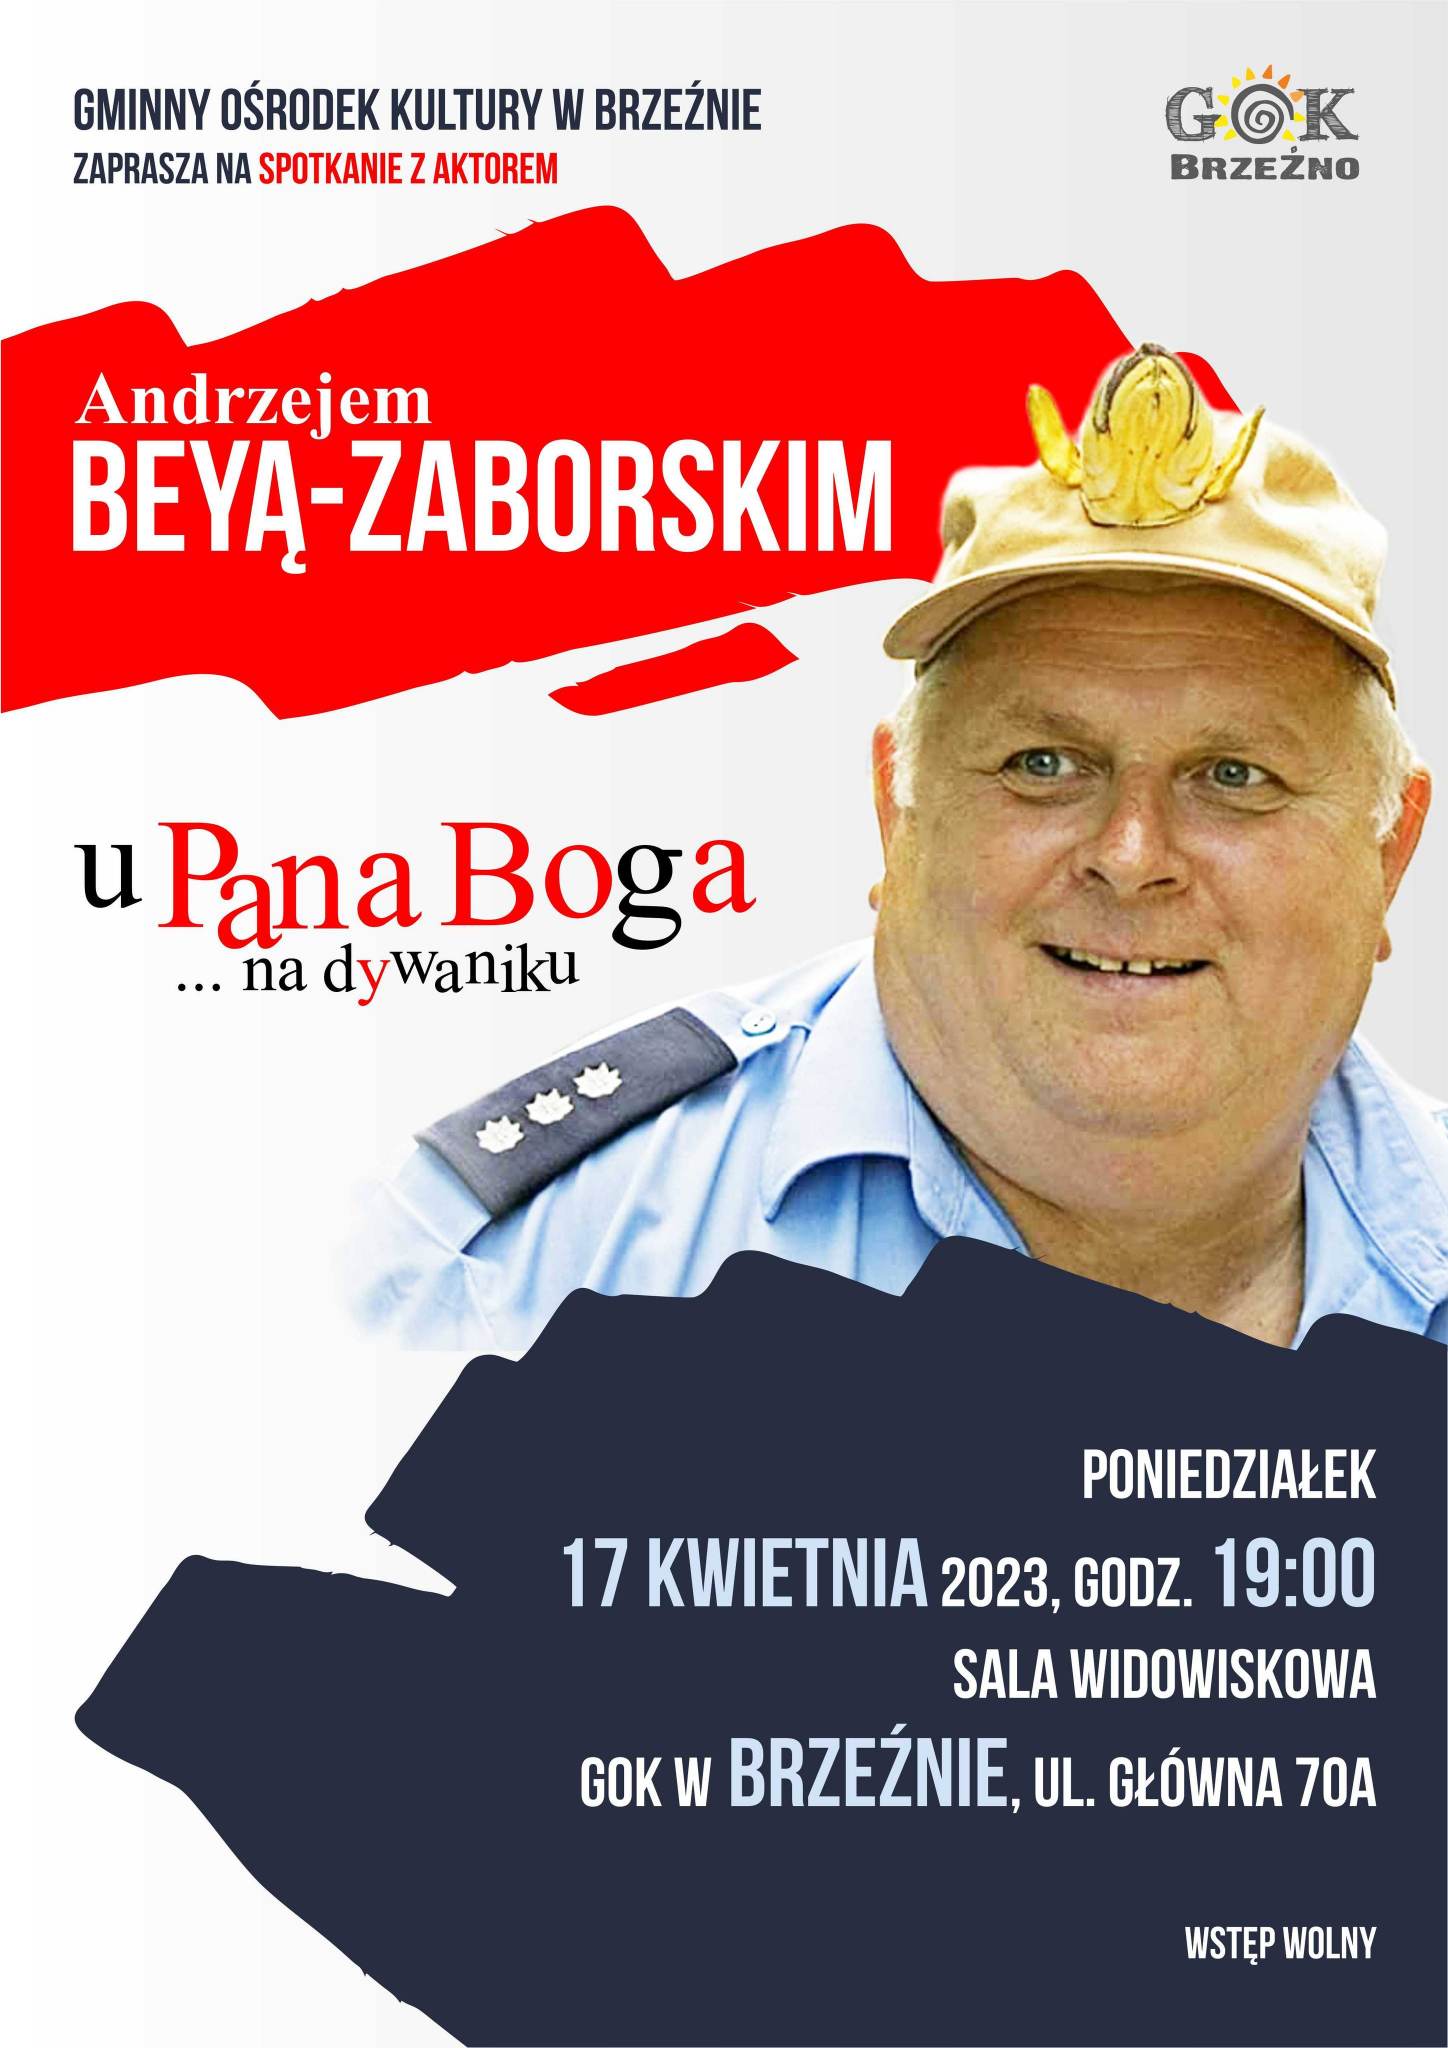 Plakat reklamujący spotkanie autorskie z Andrzejem Beyą-Zaborskim